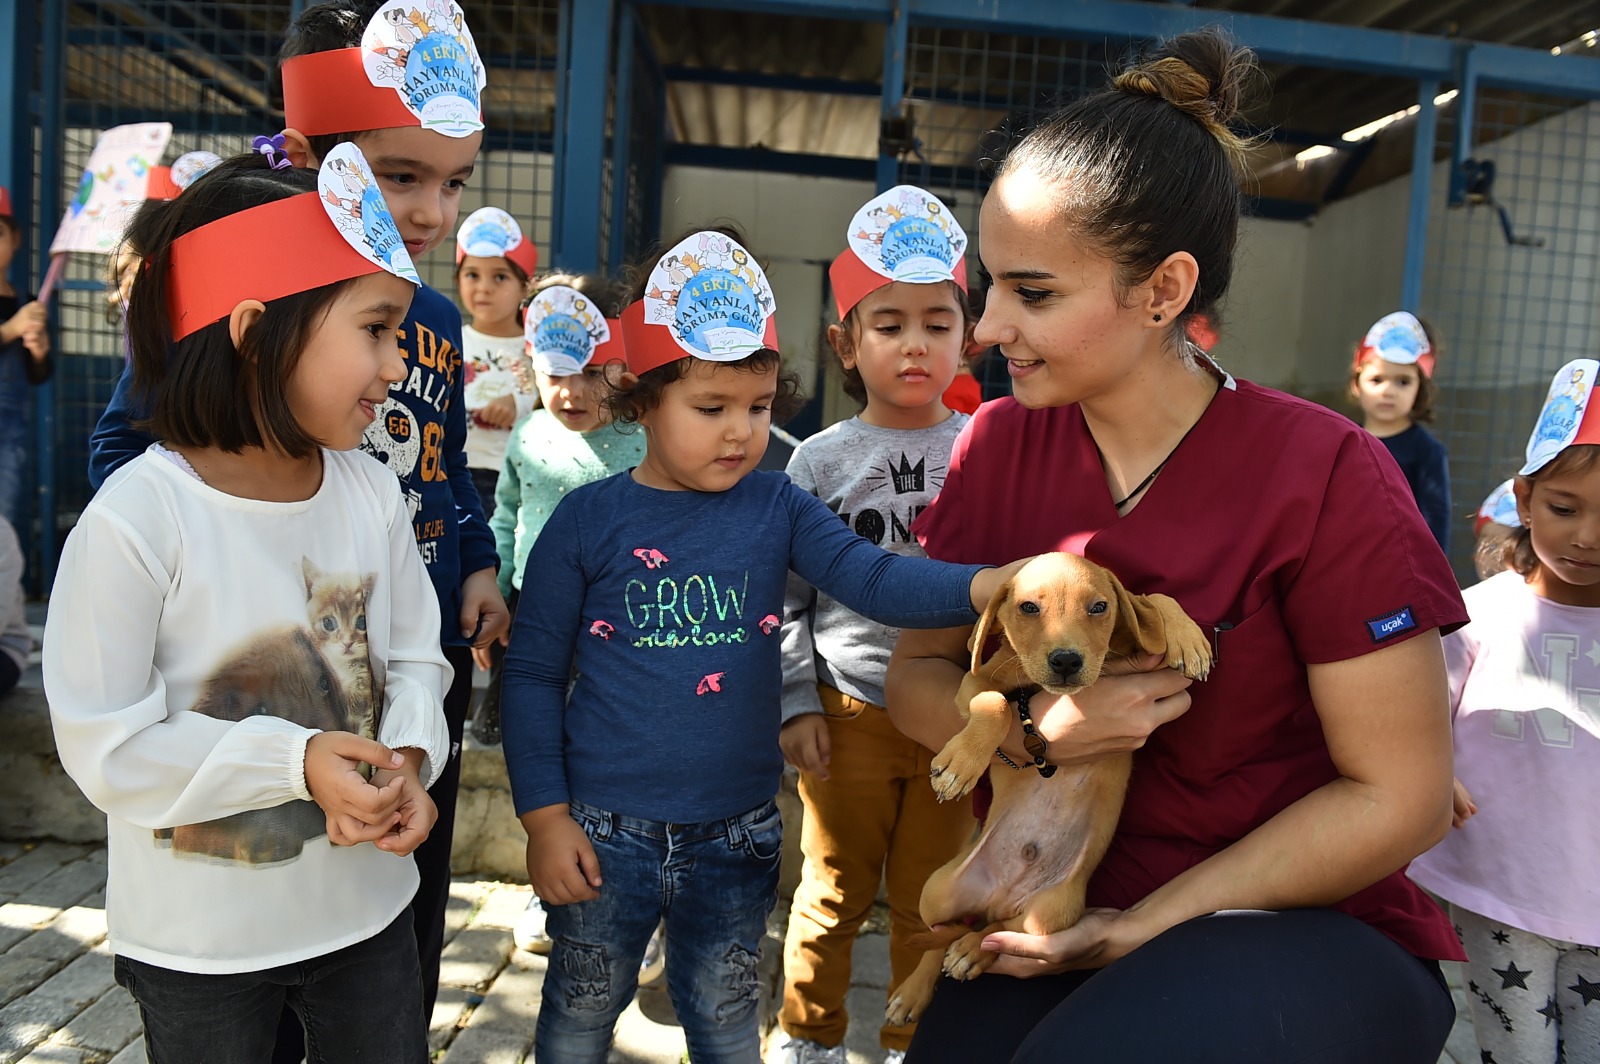 Büyükşehir’den bin 500 köpeğe rehabilitasyon merkezi